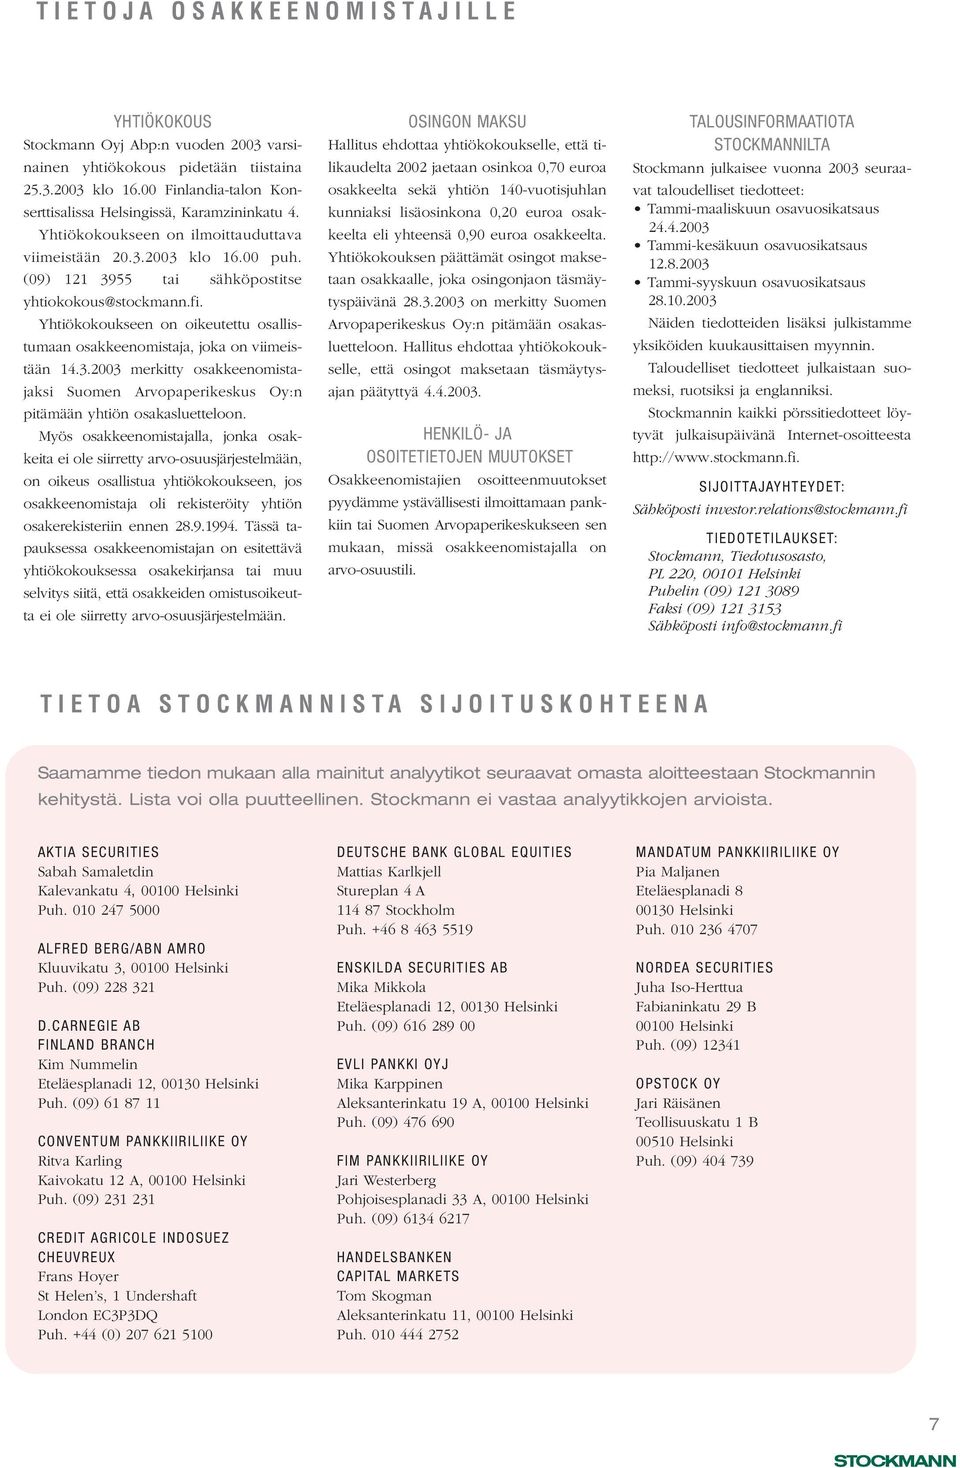 Yhtiökokoukseen on oikeutettu osallistumaan osakkeenomistaja, joka on viimeistään 14.3.23 merkitty osakkeenomistajaksi Suomen Arvopaperikeskus Oy:n pitämään yhtiön osakasluetteloon.